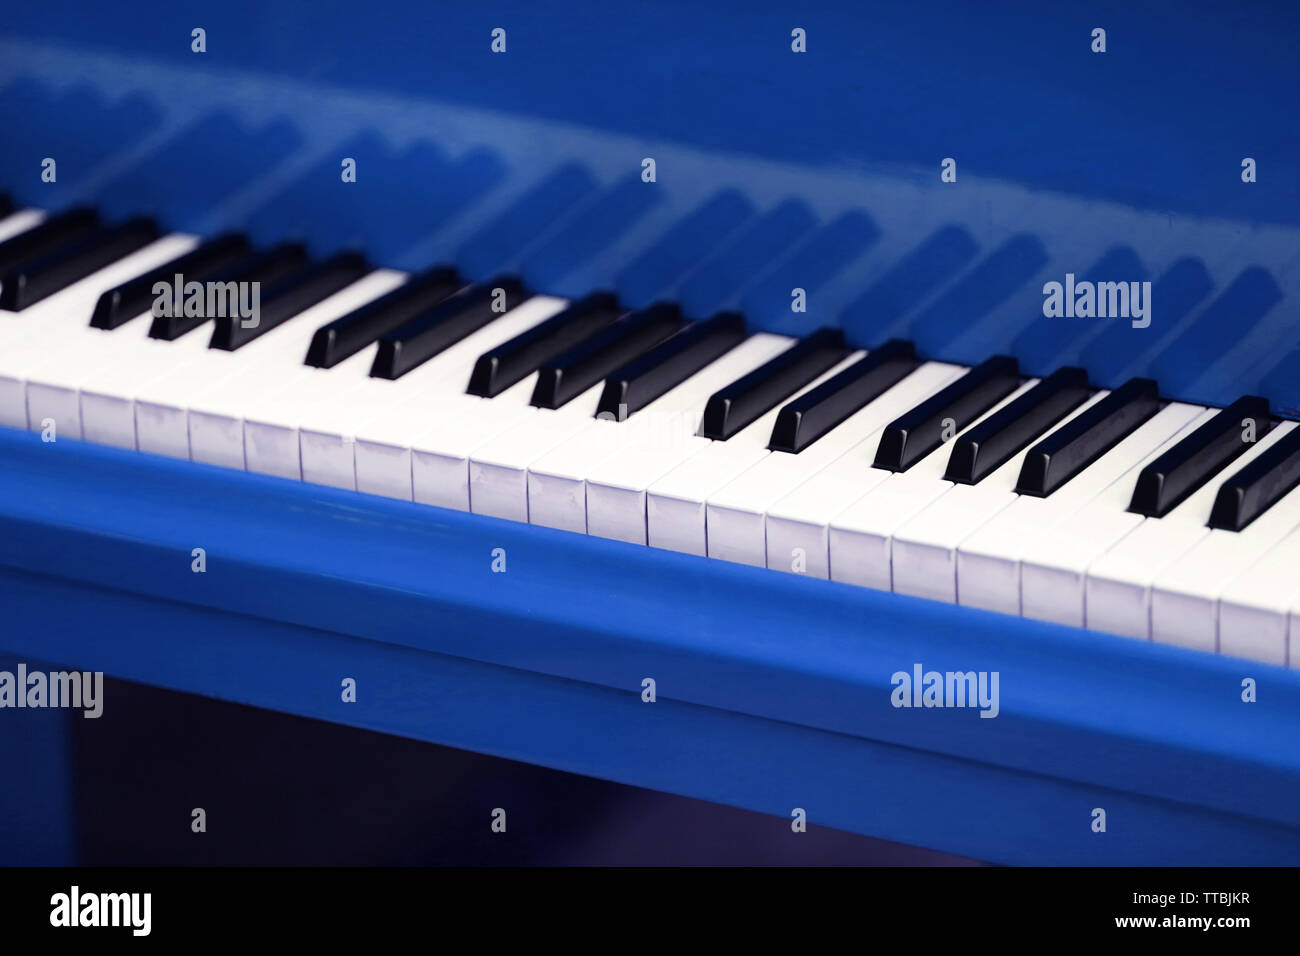 Piano keys of blue piano close up Stock Photo